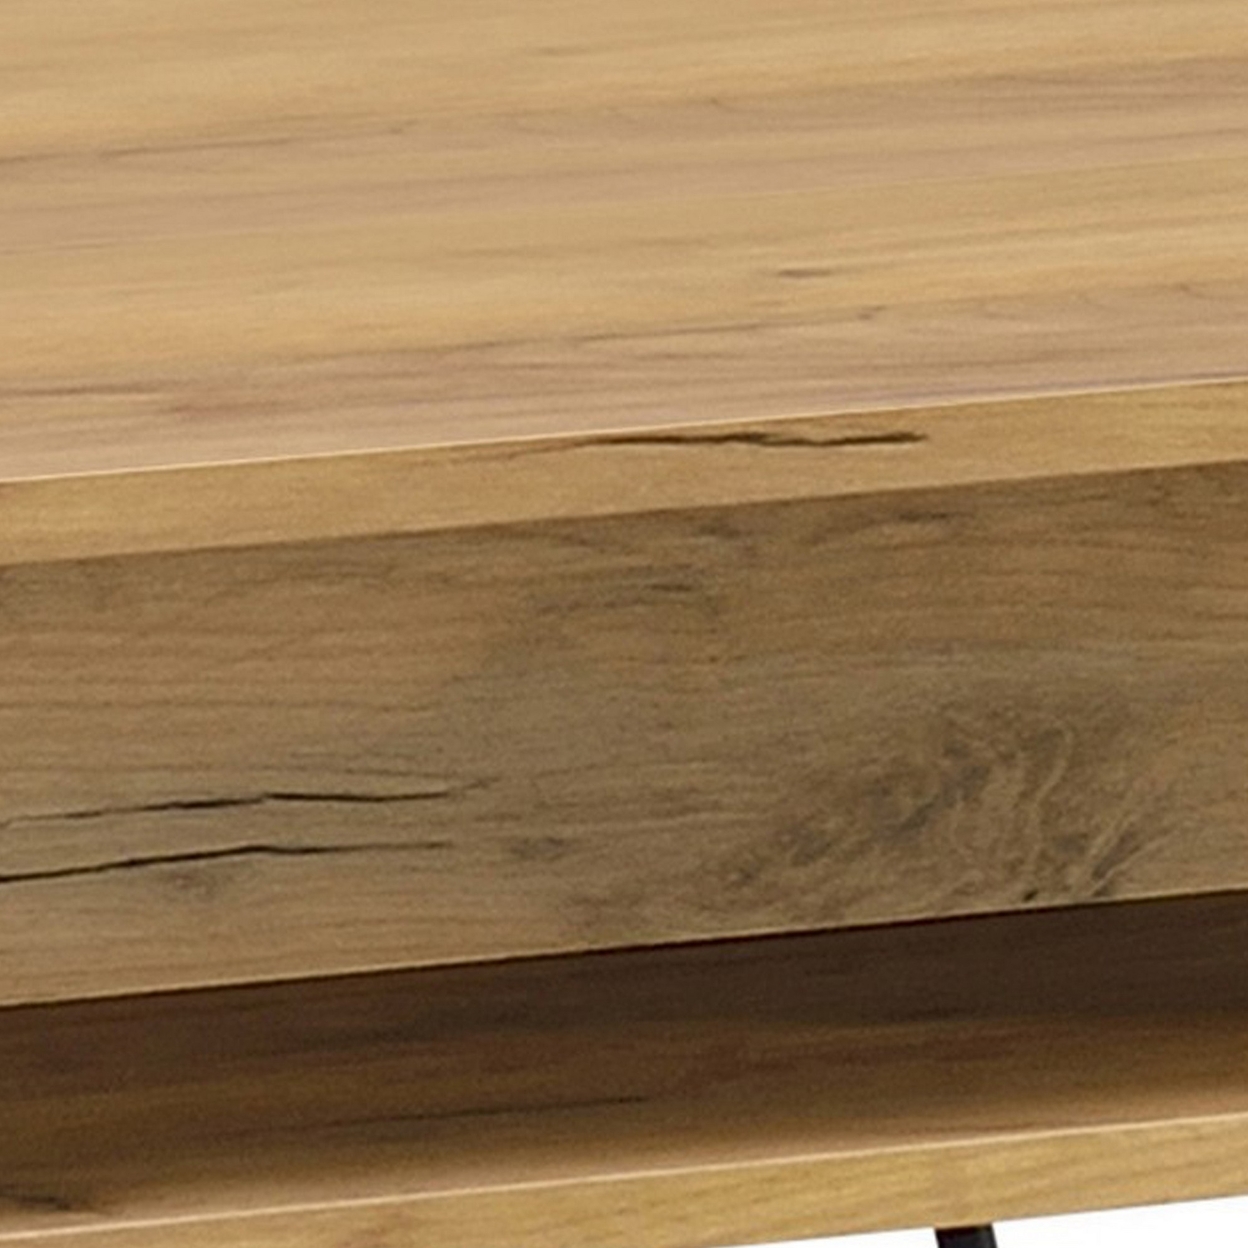 24 Inch Modern Side End Table, Golden Oak Wood, Black Metal Hairpin Legs